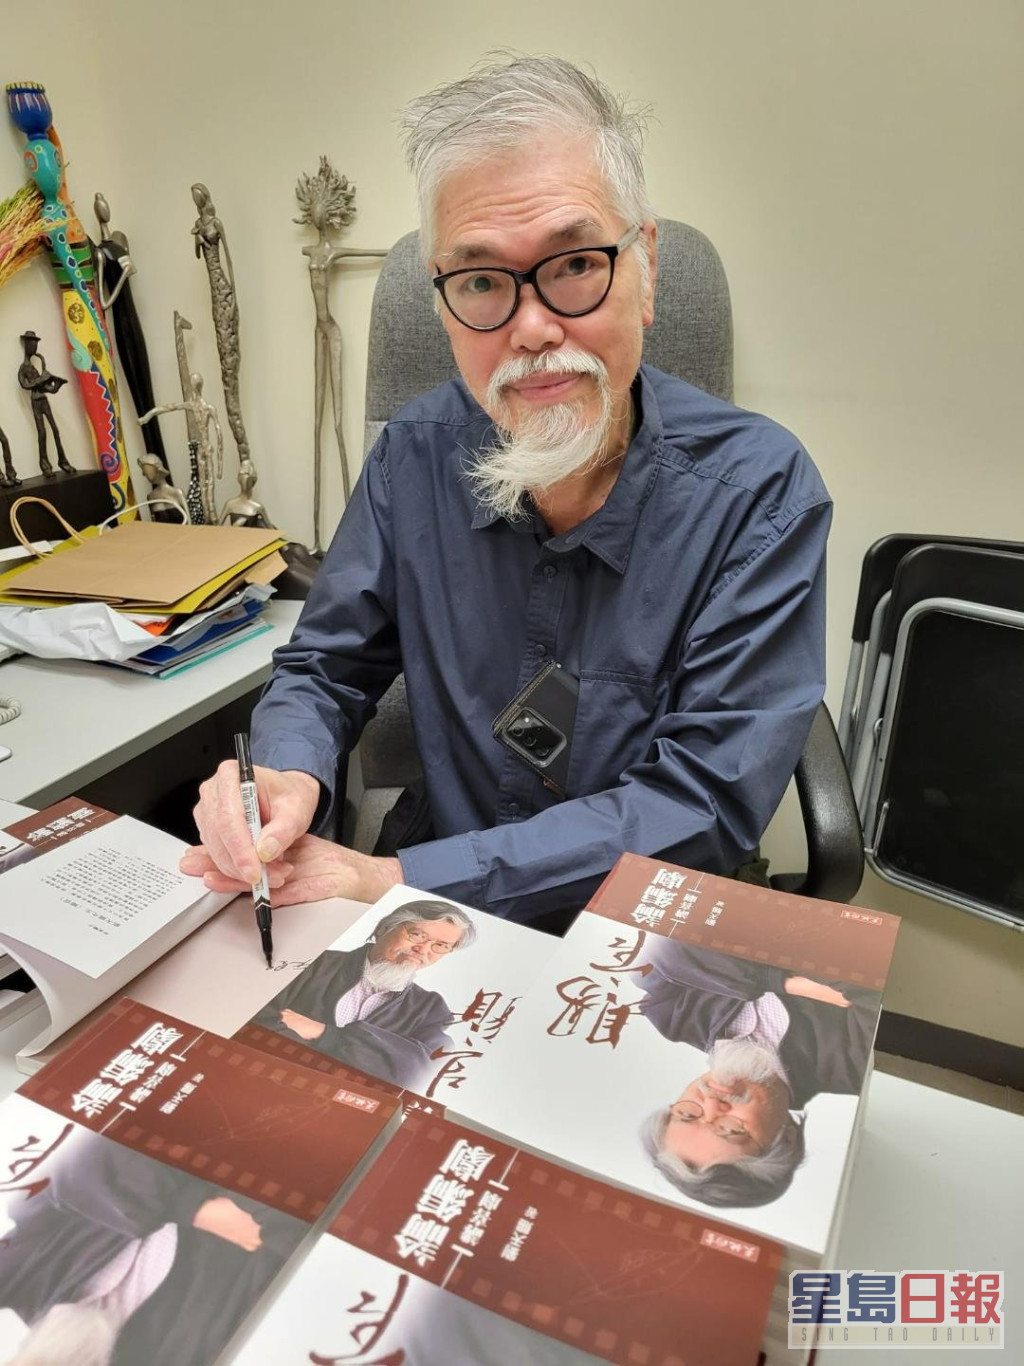 刘天赐70年代服务过嘉禾电影公司，在80年代至2010年代也曾出任香港大都会电影公司监制、总经理、香港电台广播节目主持人。